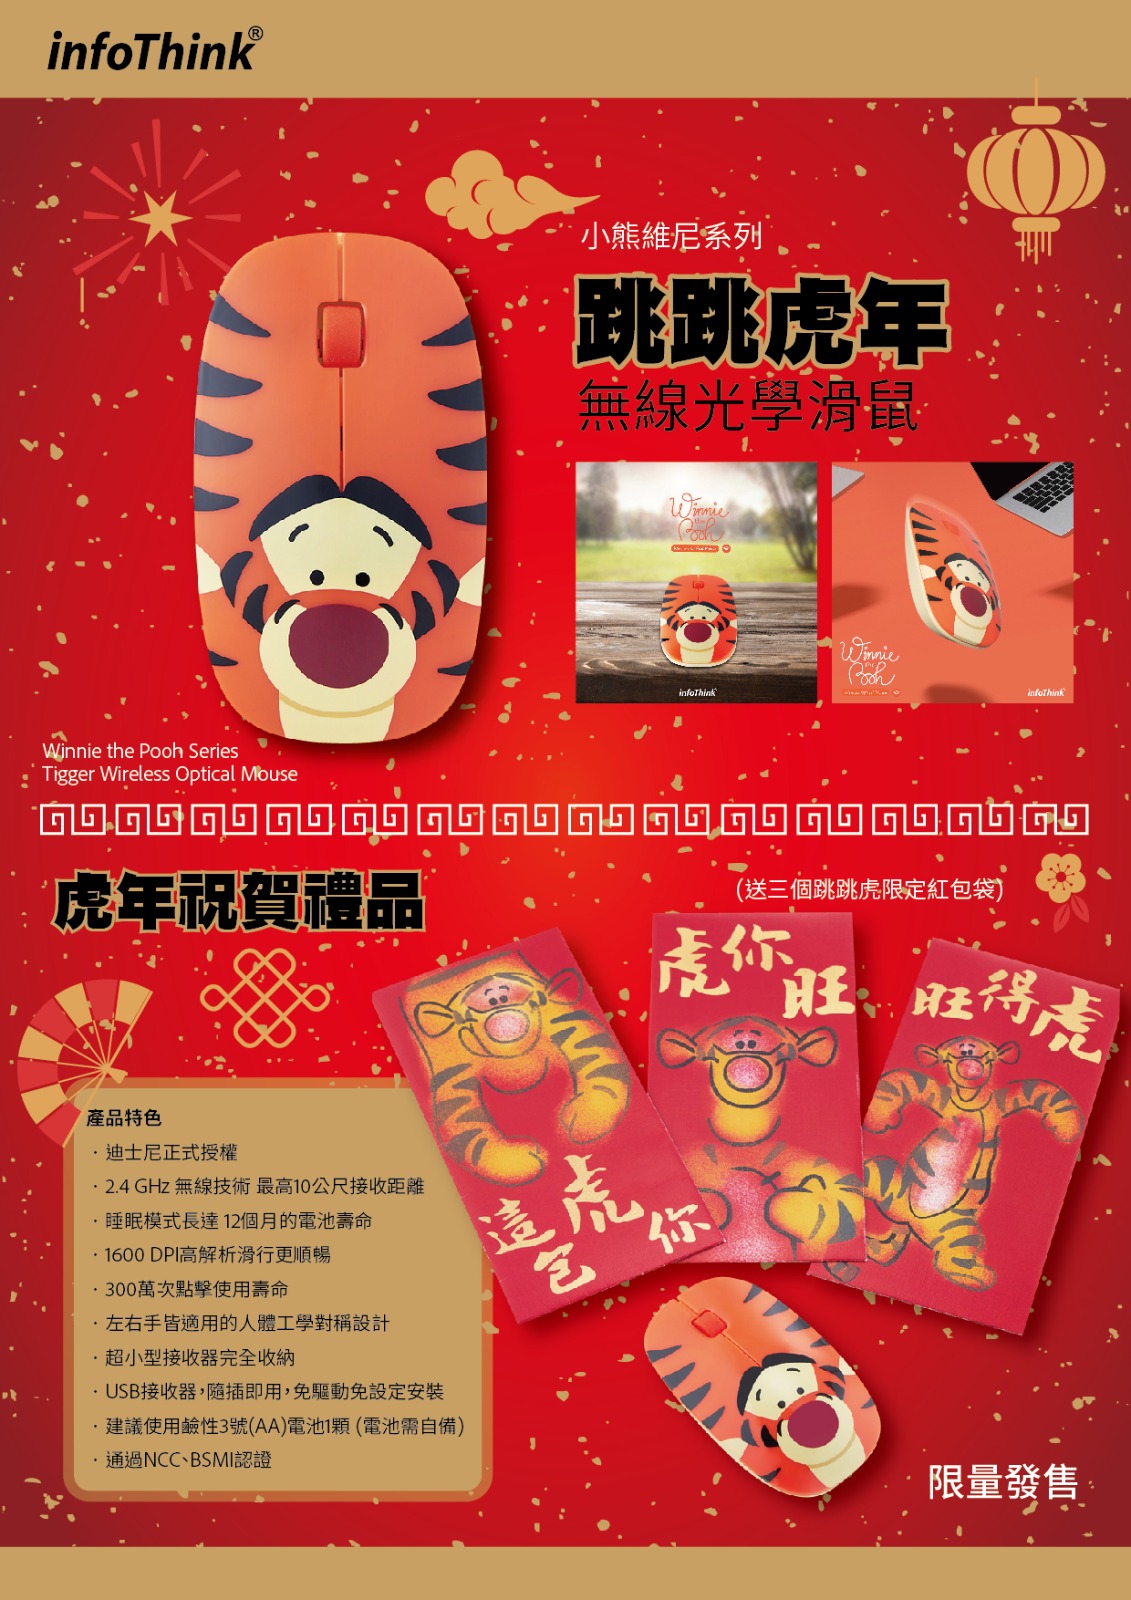 【特價】台灣Infothink 小熊維尼系列 跳跳虎無線光學滑鼠(送三個跳跳虎限定紅包袋)- 限量版